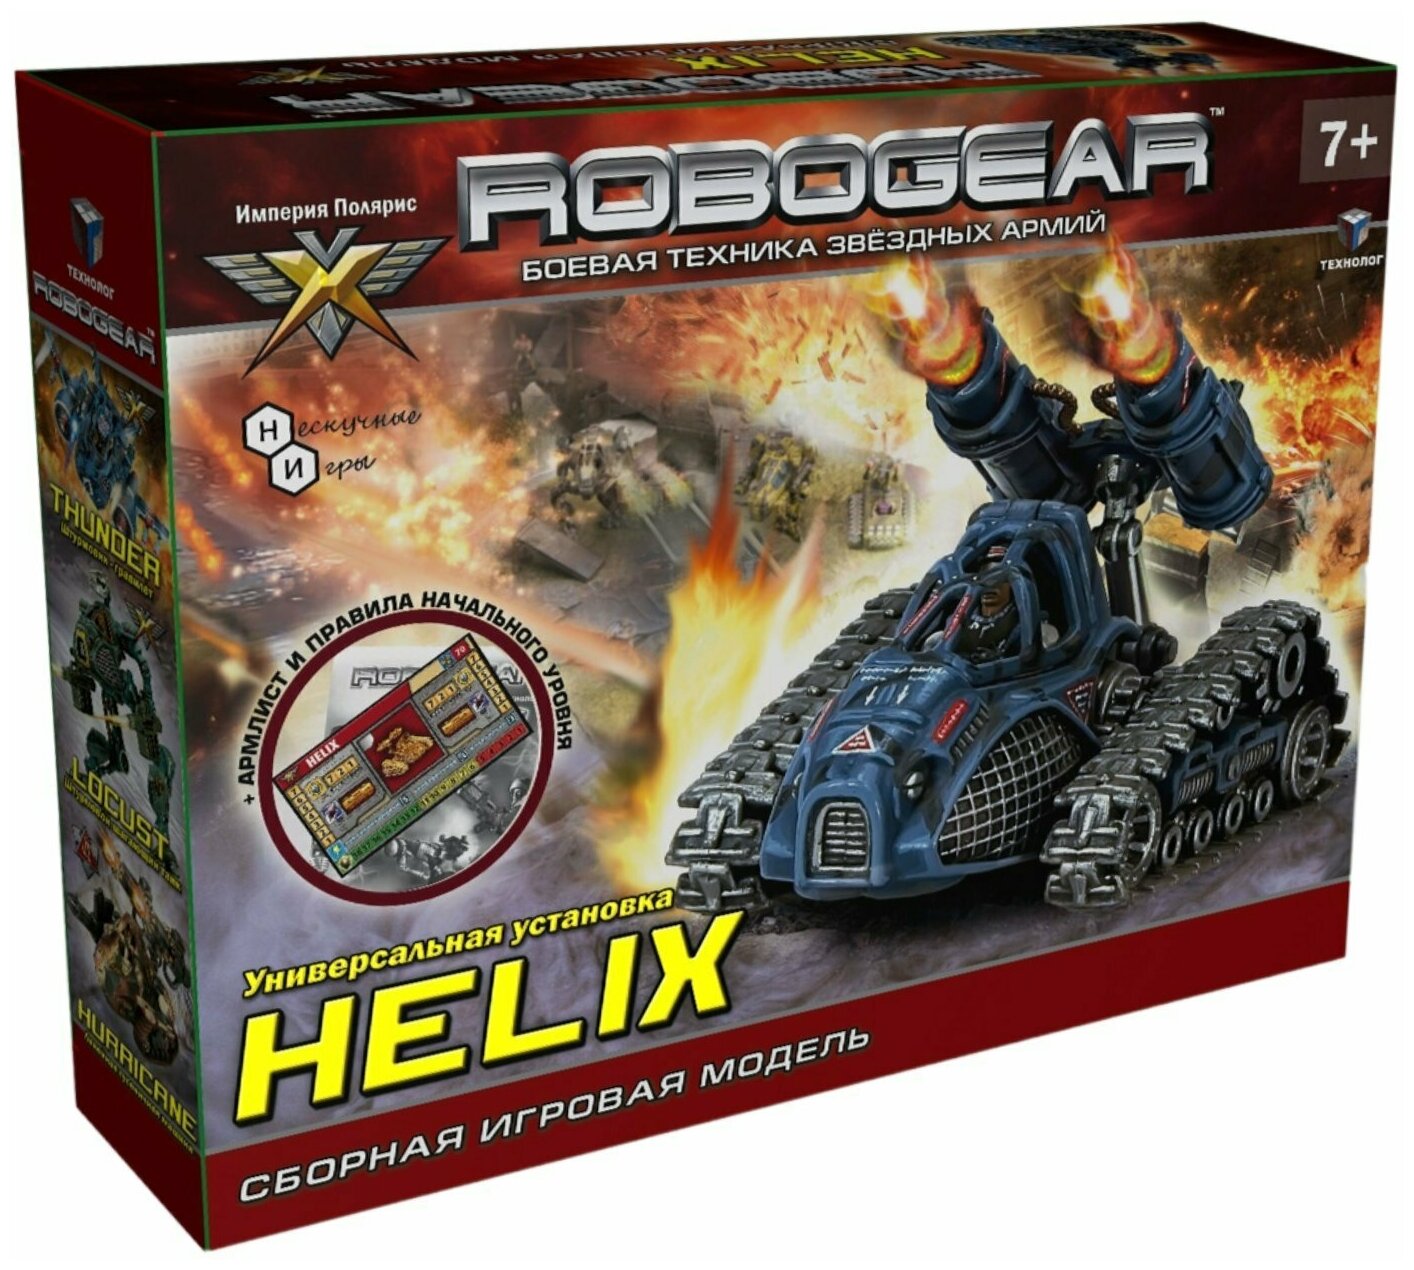 Технолог Сборная модель Robogear Helix Хелис 00101 с 7 лет